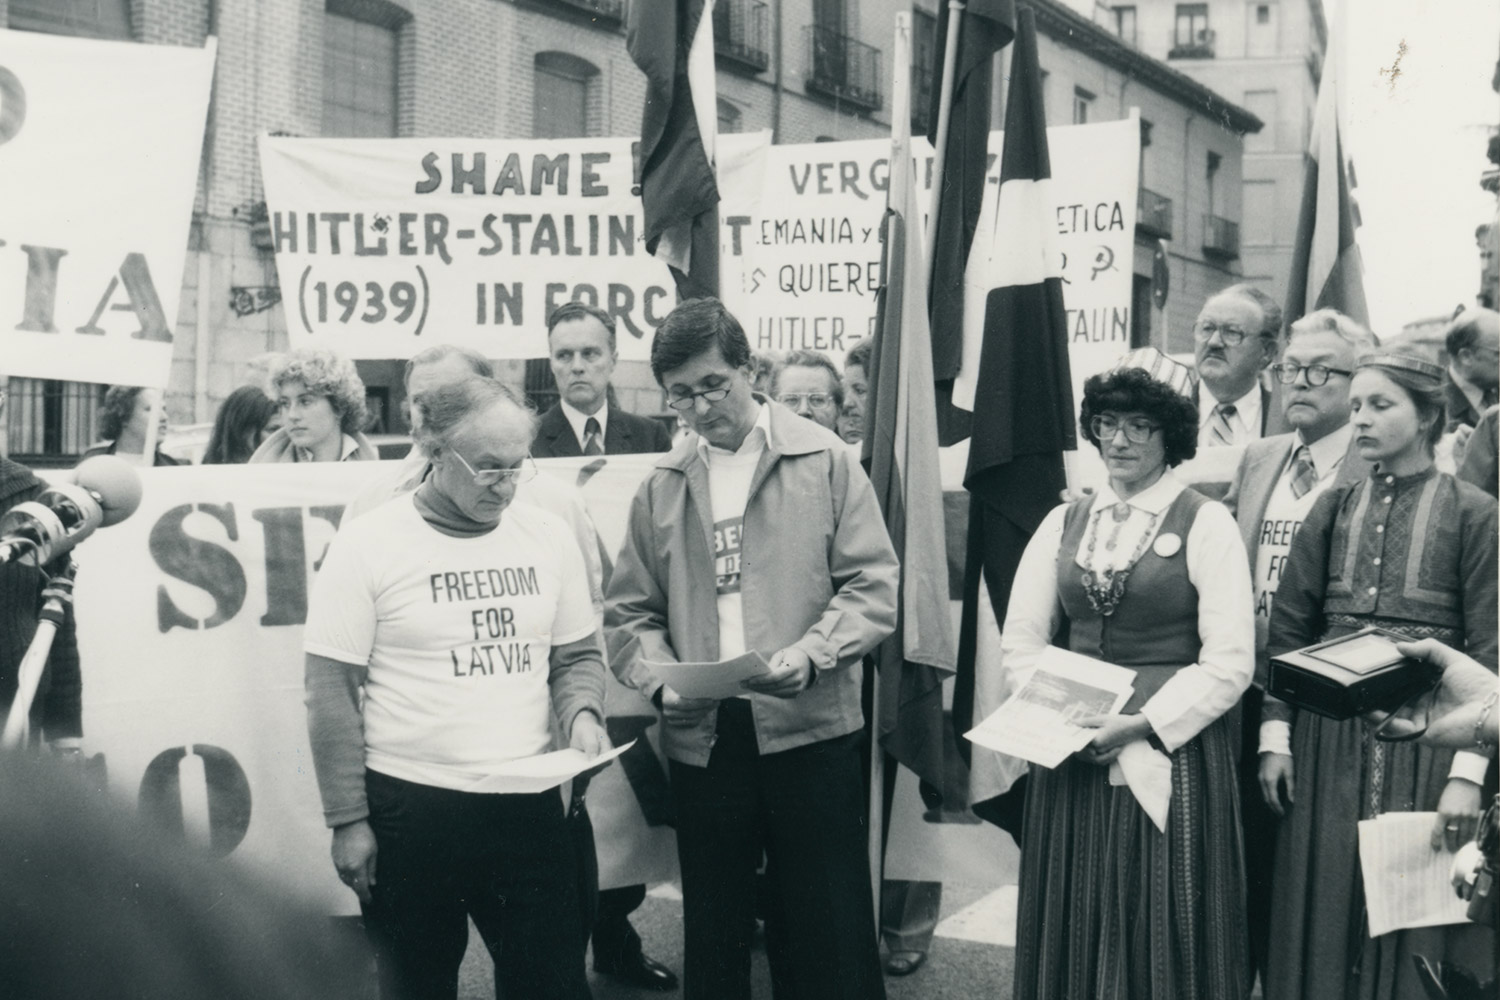 1980 m. Madridas, Ispanija. Baltijos kraštų politinių išeivių surengta politinė demonstracija, Madride vykstant Europos saugumo ir bendradarbiavimo konferencijai. LCVA